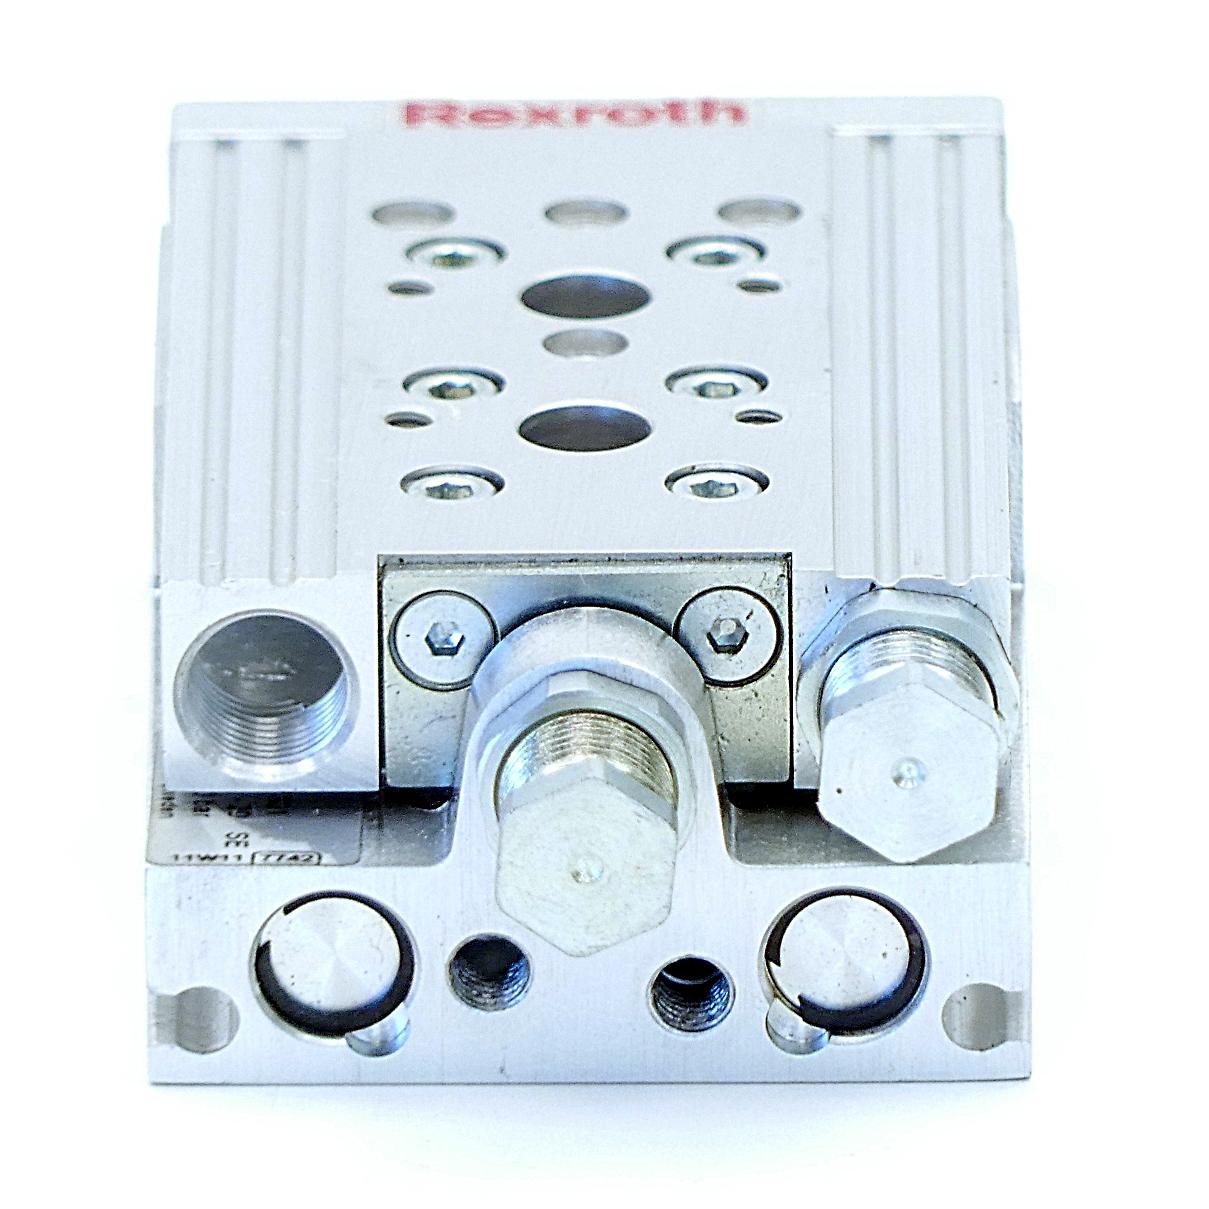 Produktfoto 4 von REXROTH Kompaktschlitten MSC-8-20 SE